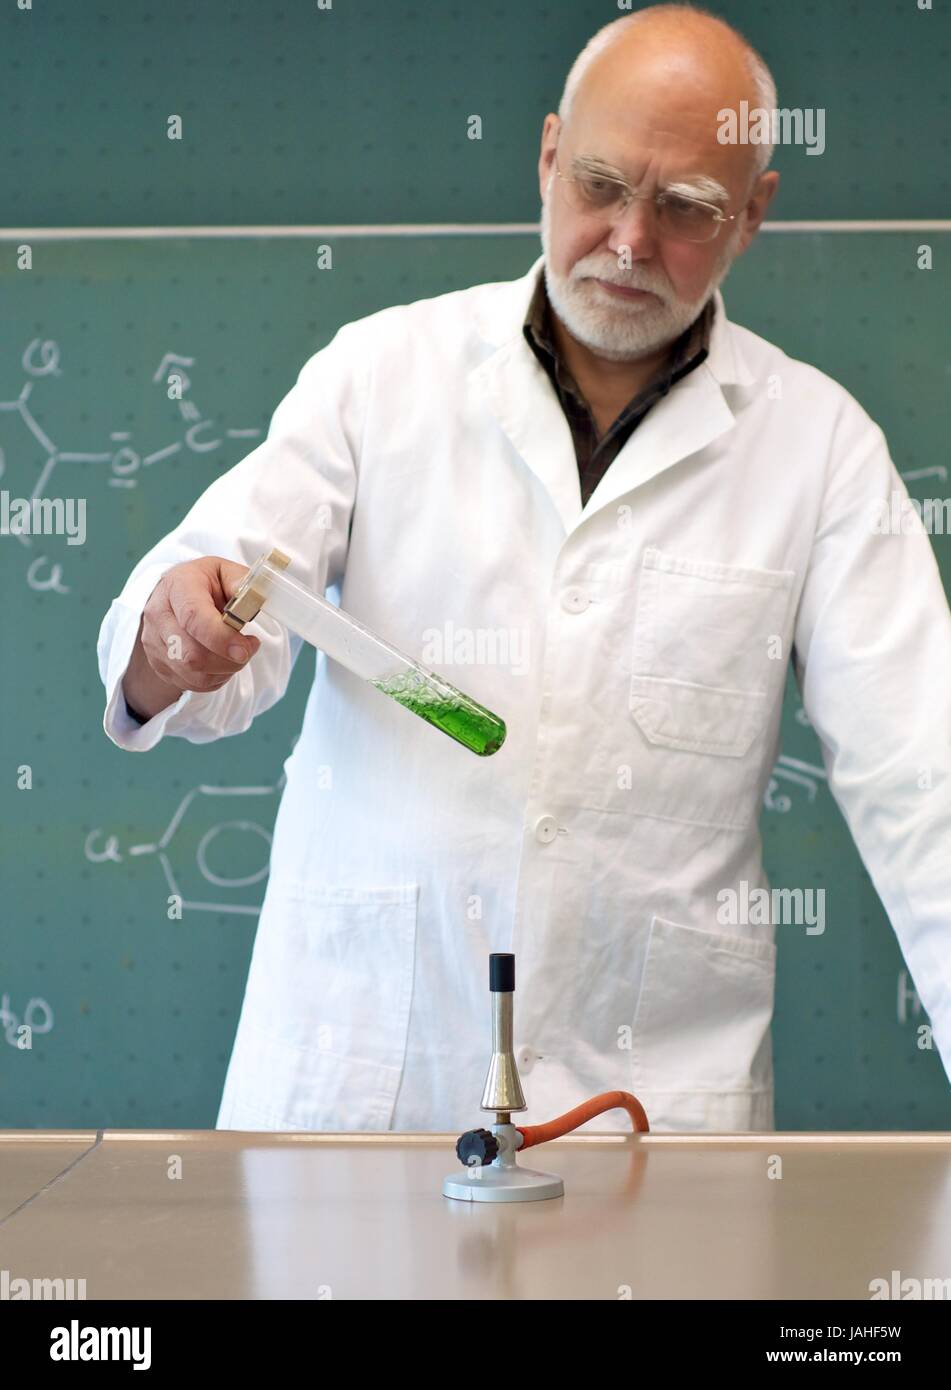 Mann erhitzt ein Reagenzglas mit Chemikalien Stock Photo